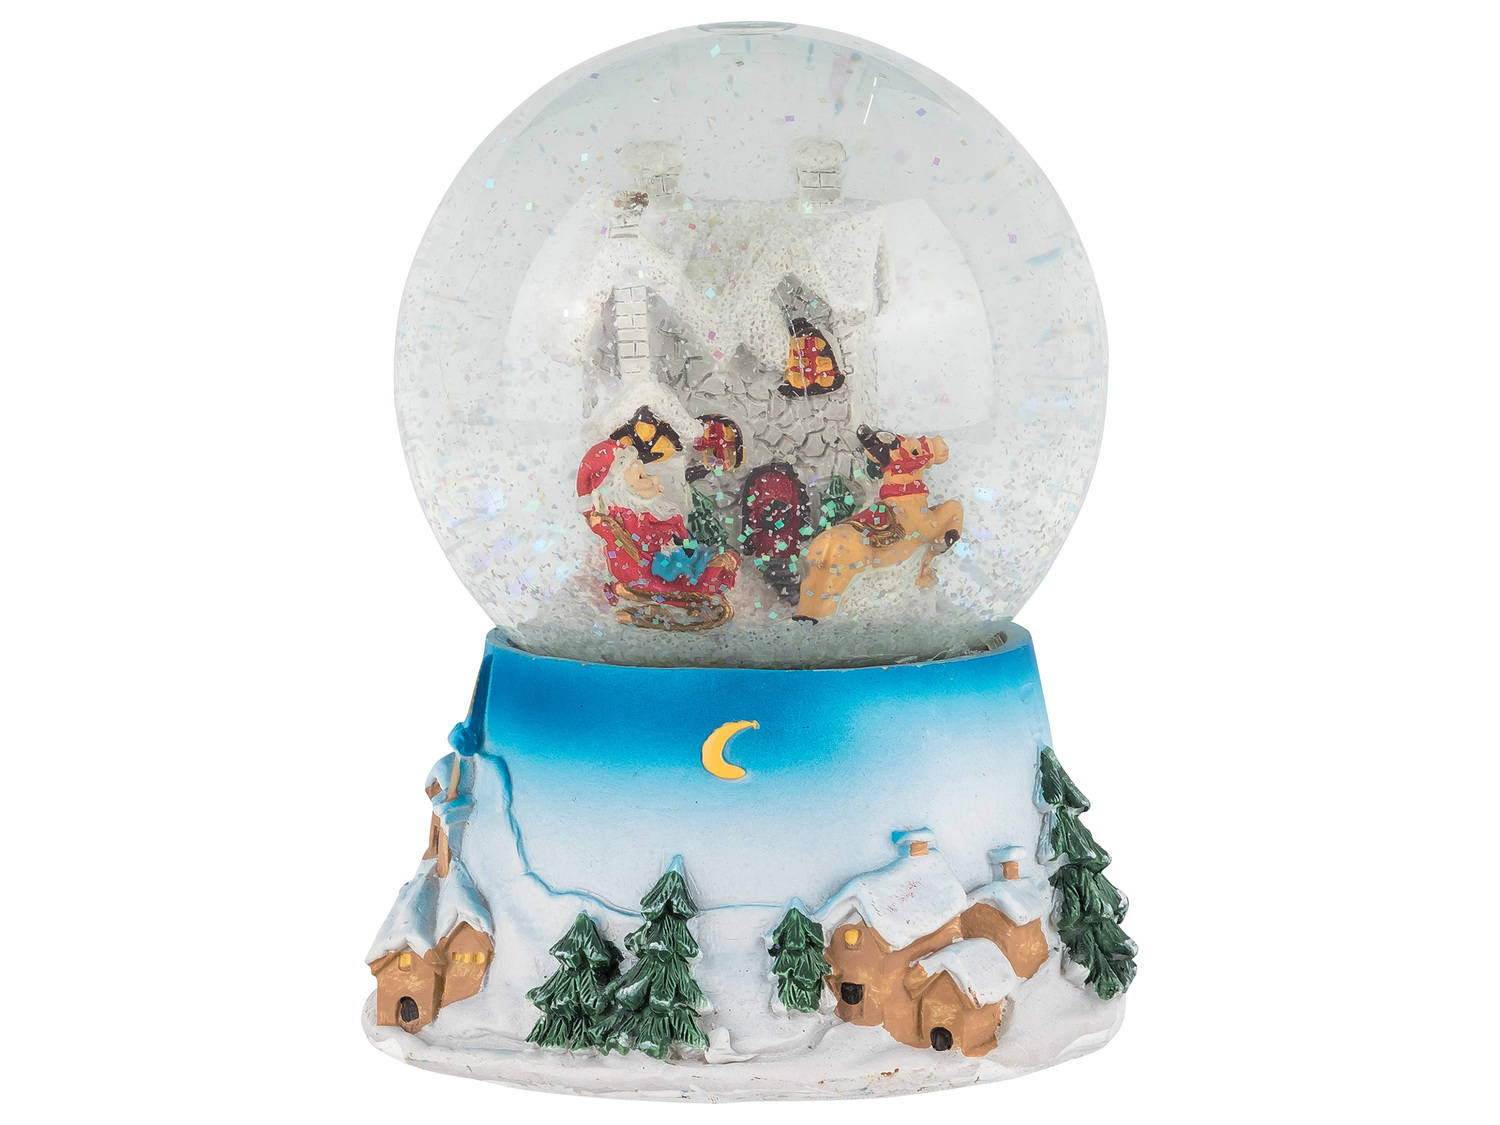 Boule à neige musicale , le prix 8.99 € 
- Au choix : Frosty the Snowman ou ...